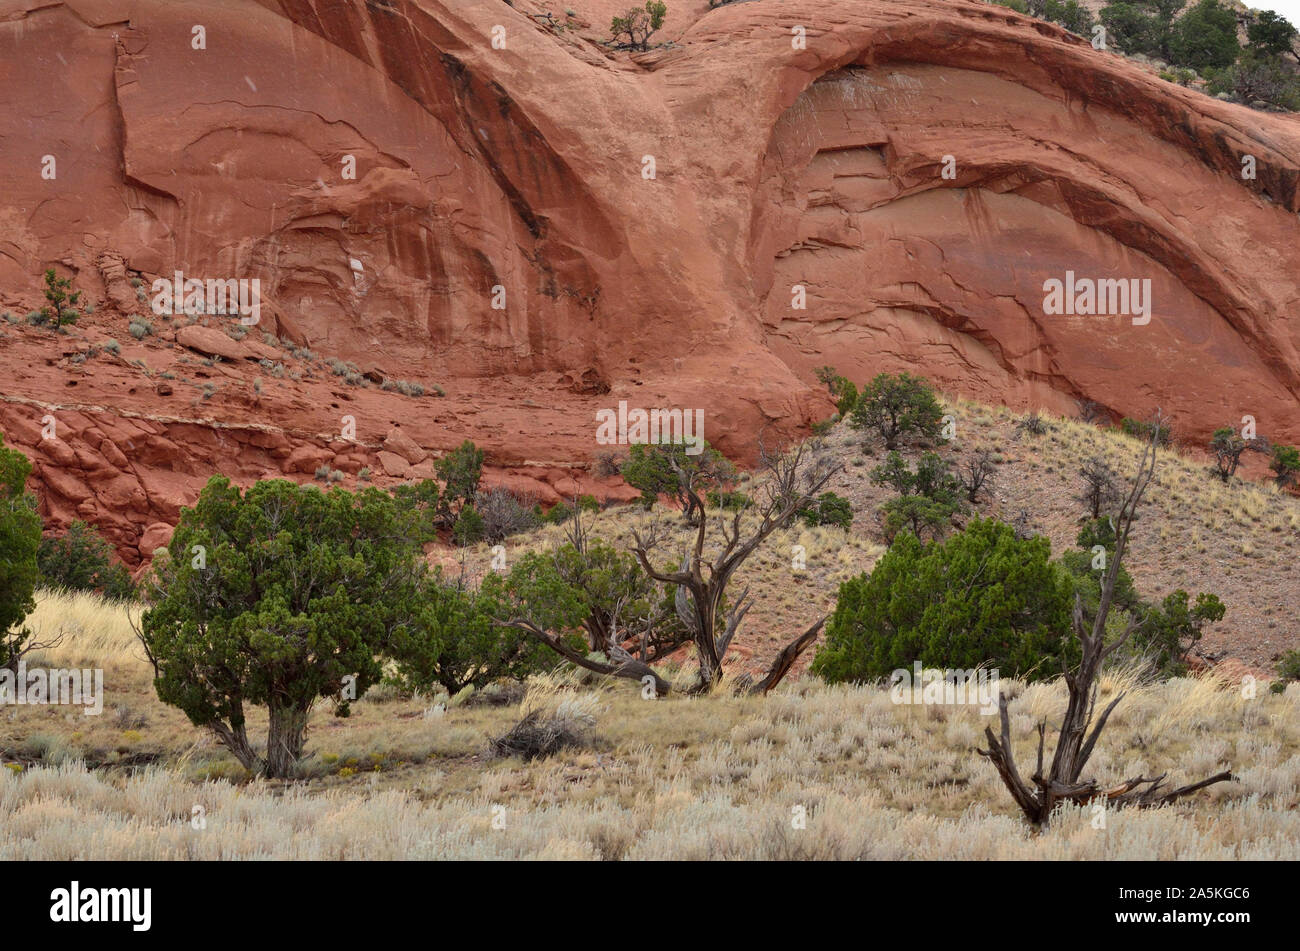 Les yeux de hibou, le grès rouge (OWL) Tecolote Mesa, 11ème siècle Petite Casamero Chacoan Outlier, Pueblo, McKinley Comté, NM 75173 190908 Banque D'Images